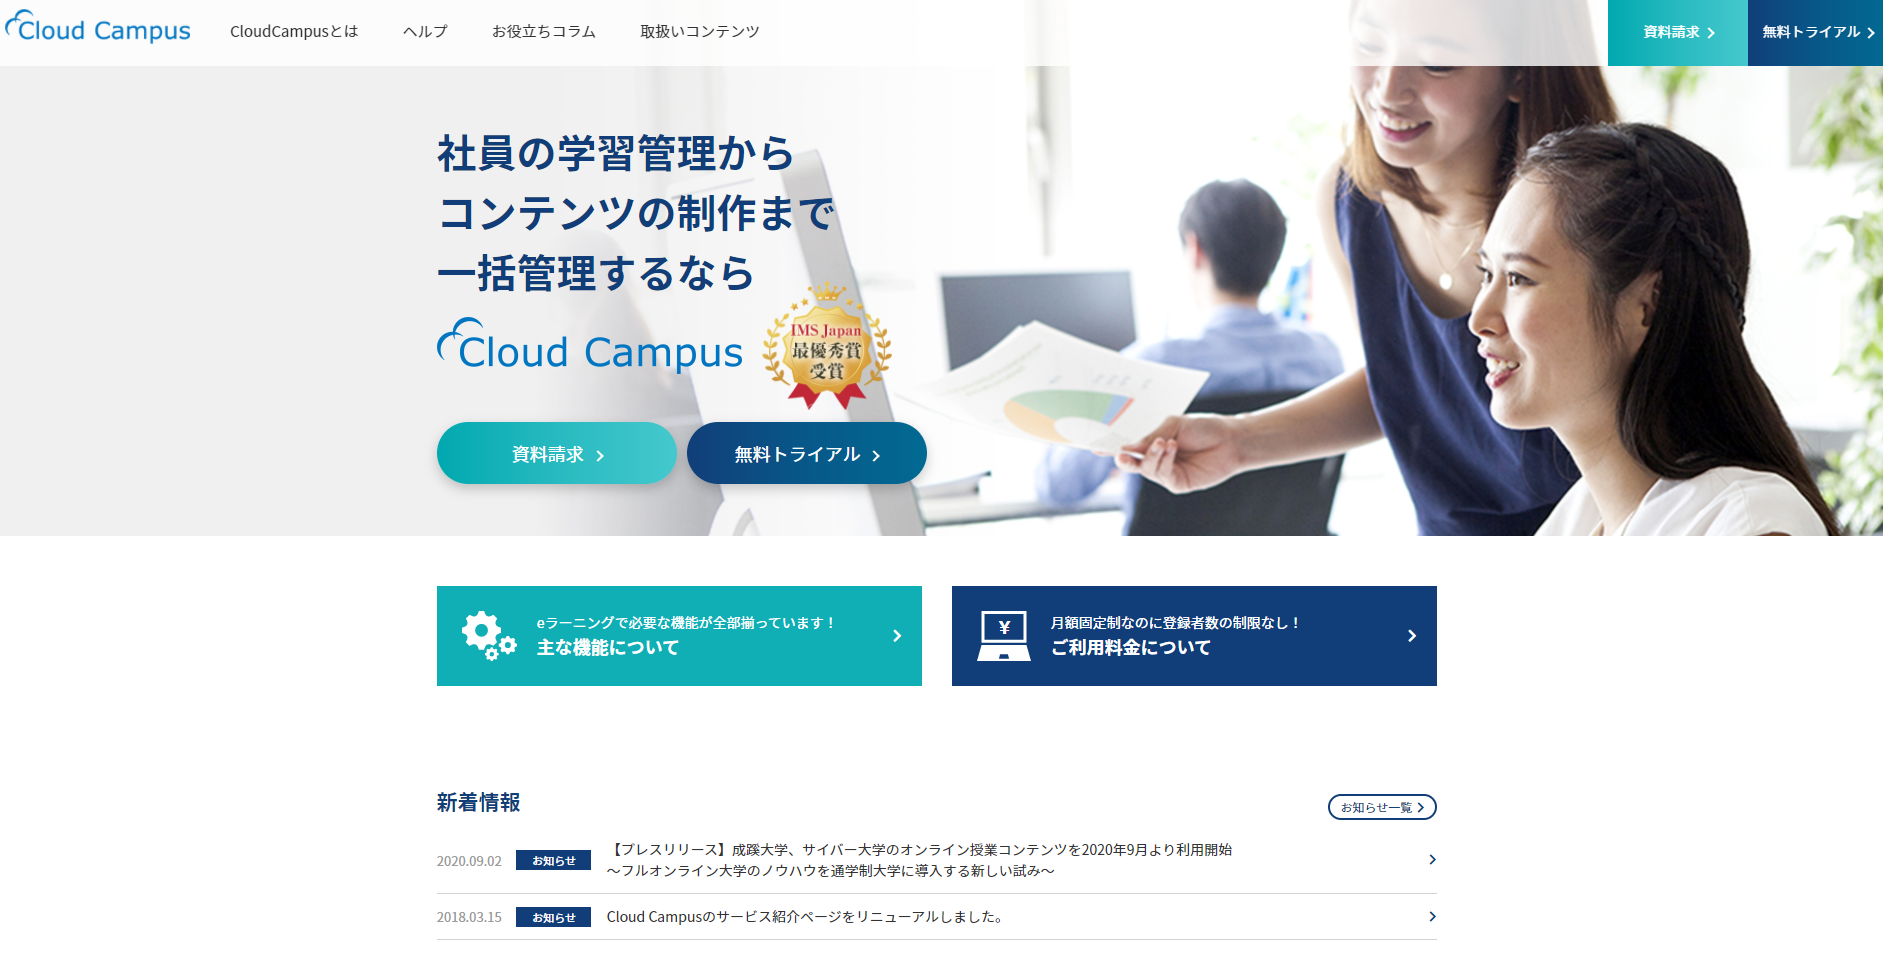 Cloud Campus_1883x979